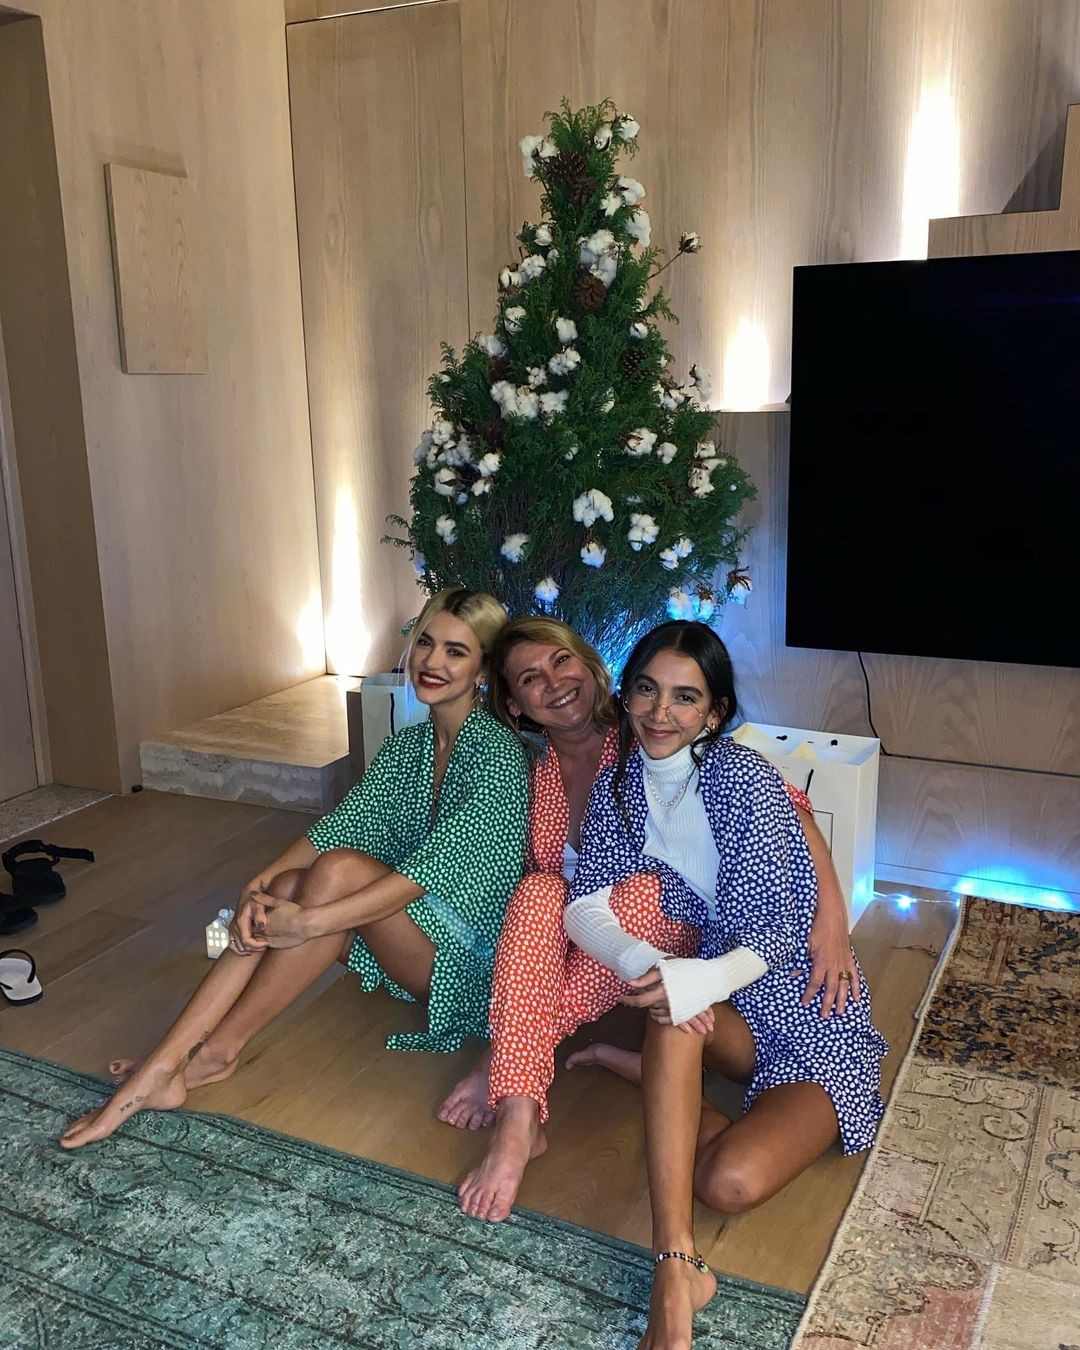 Em looks coloridos, Manu Gavassi curte Natal ao lado da irmã e mãe (Foto: Instagram/ Reprodução)